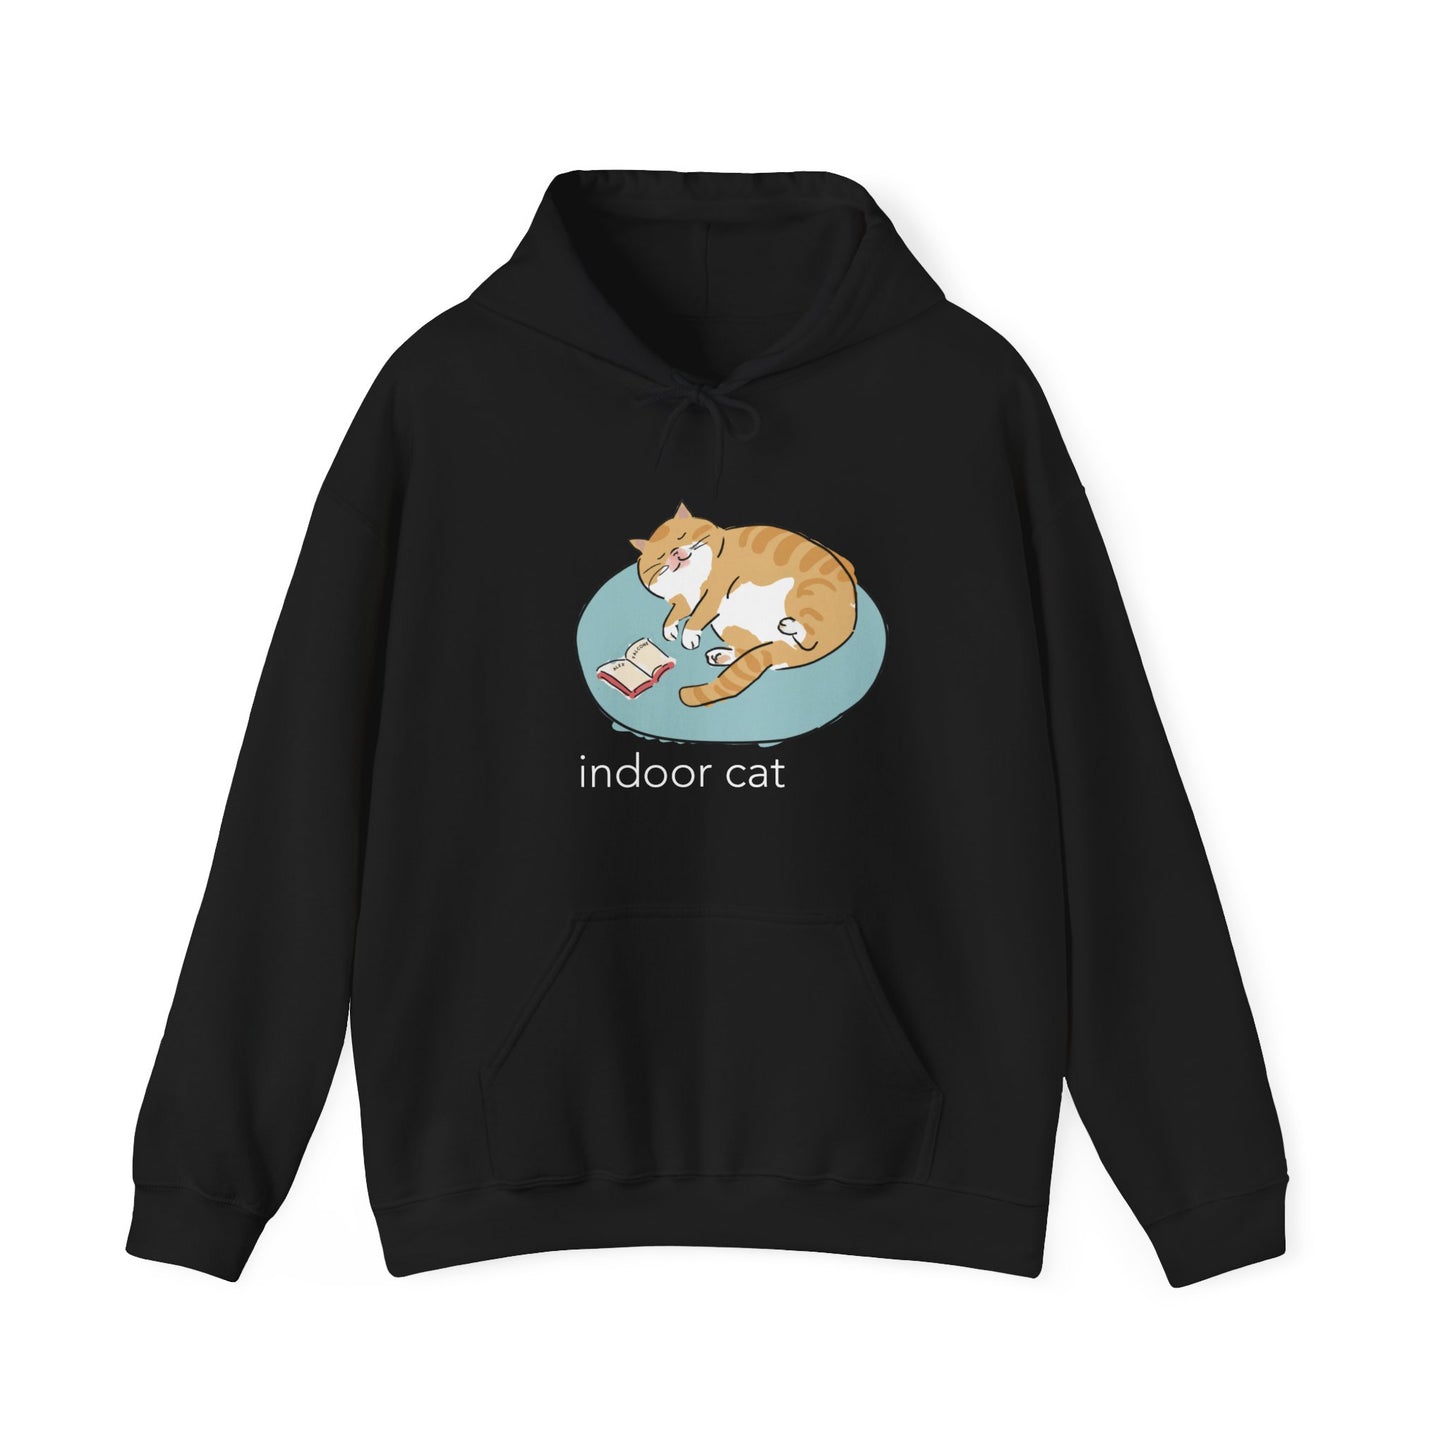 Indoor cat - hoodie